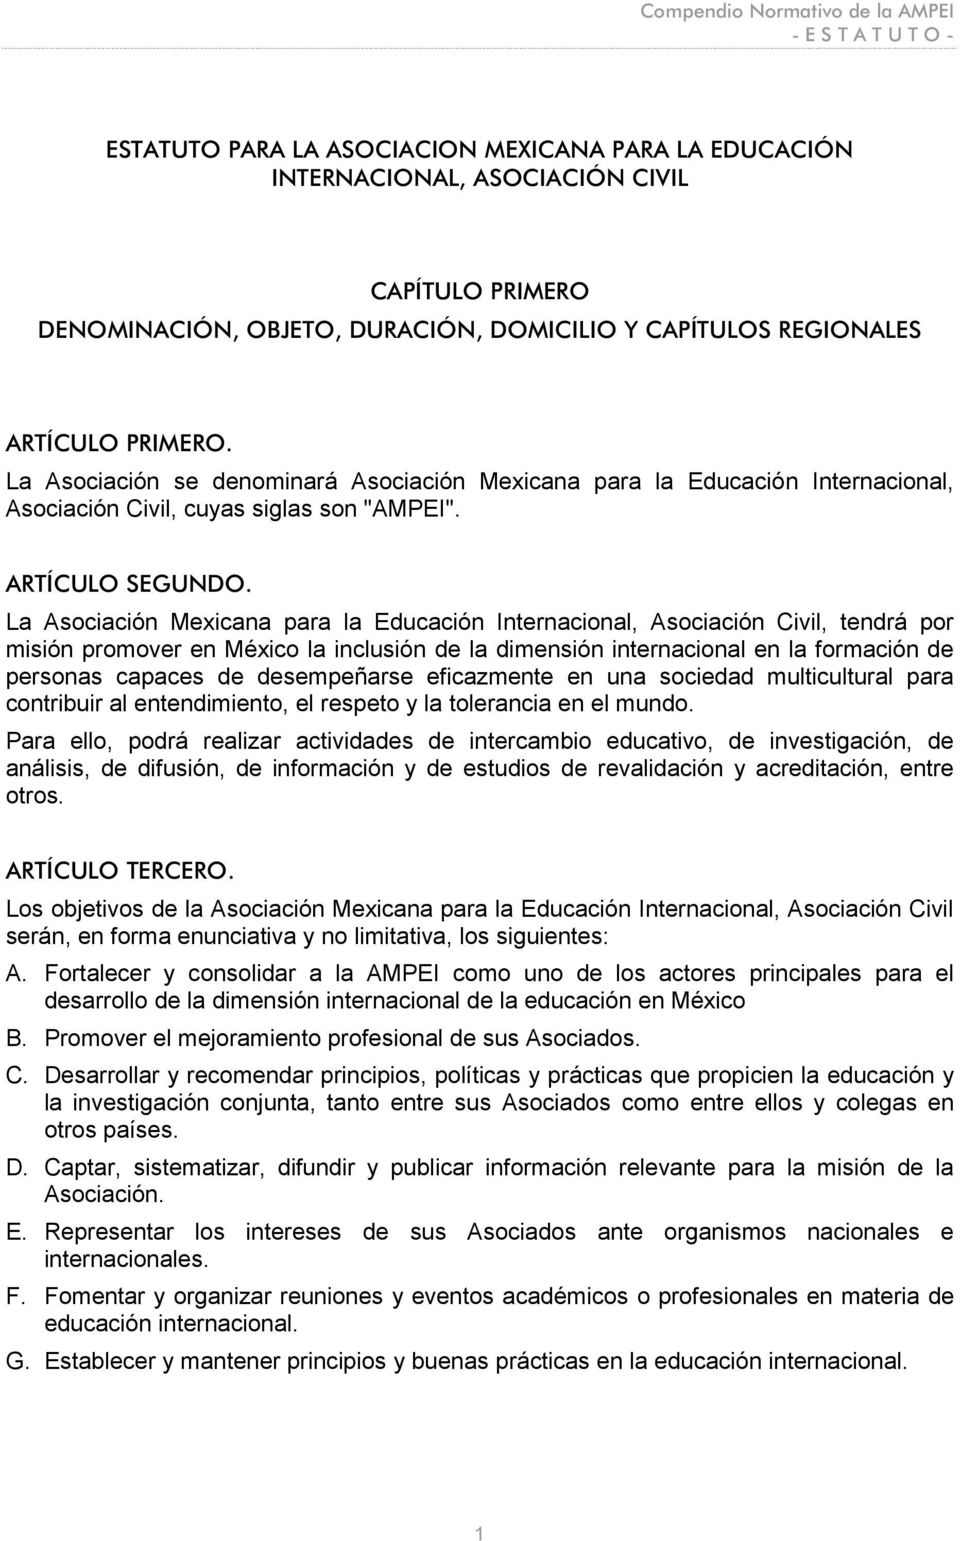 La Asociación Mexicana para la Educación Internacional, Asociación Civil, tendrá por misión promover en México la inclusión de la dimensión internacional en la formación de personas capaces de